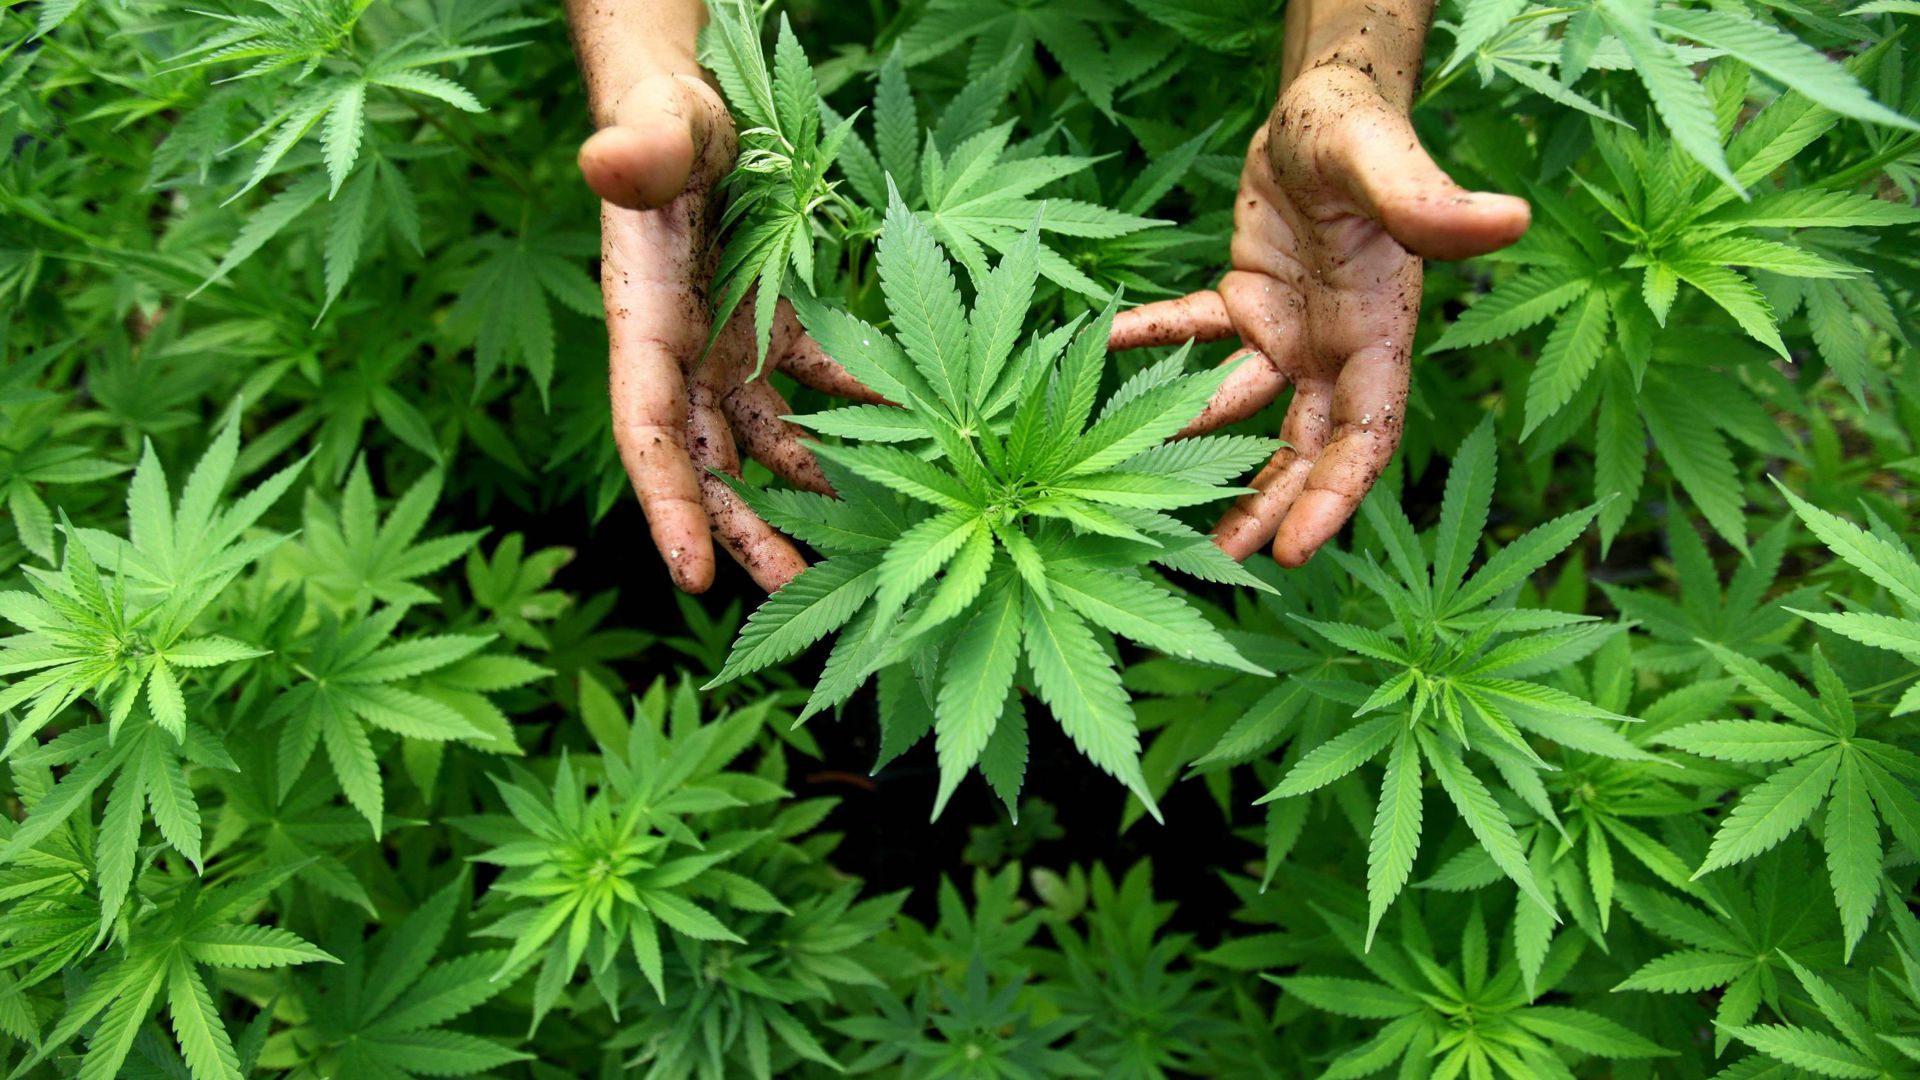 ARCHIV - 31.08.2010, Israel, Safed:  Hanf-Pflanzen wachsen in einer Cannabis-Plantage.  (zu dpa "Israels Cannabis-Branche in den Startlöchern - Doch Regierung bremst" vom 10.04.2018) Foto: ABIR SULTAN/dpa +++(c) dpa - Bildfunk+++ | Verwendung weltweit